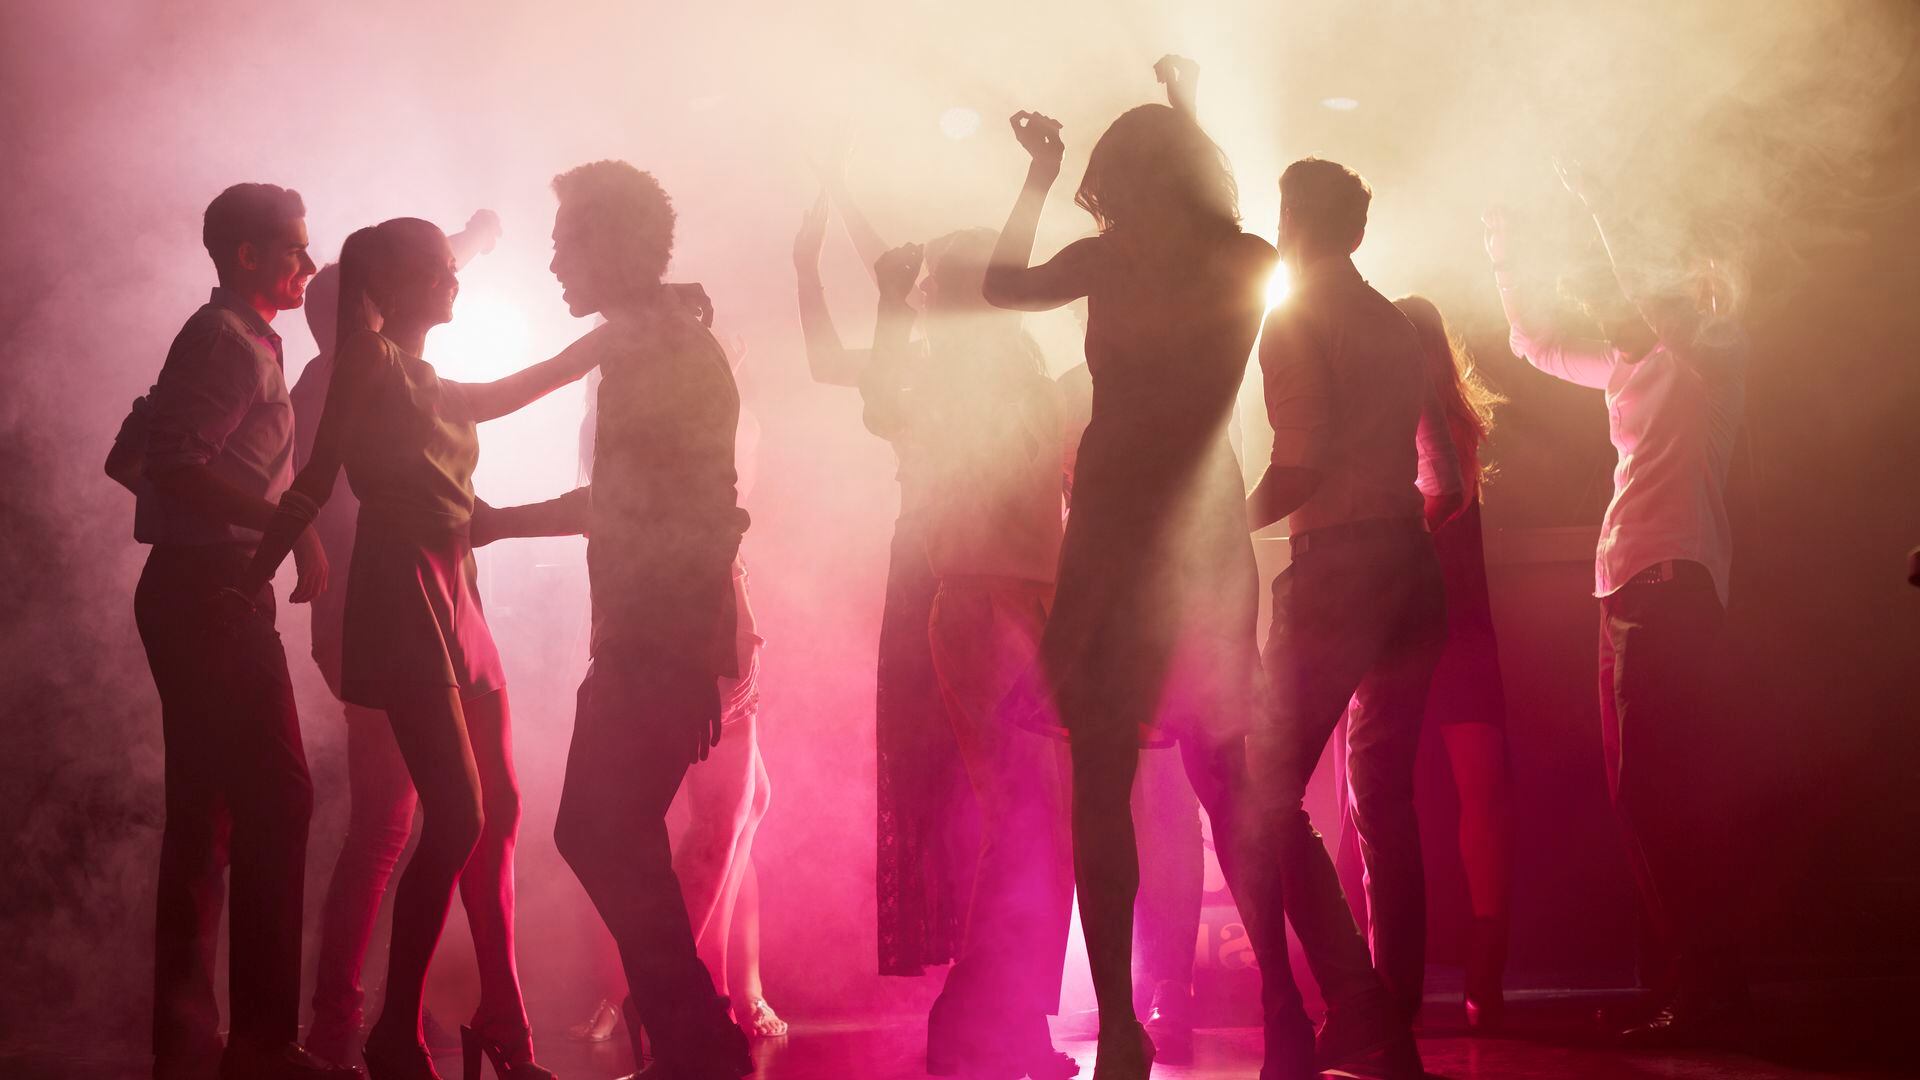 Group of people dancing on dance floor at nightclub